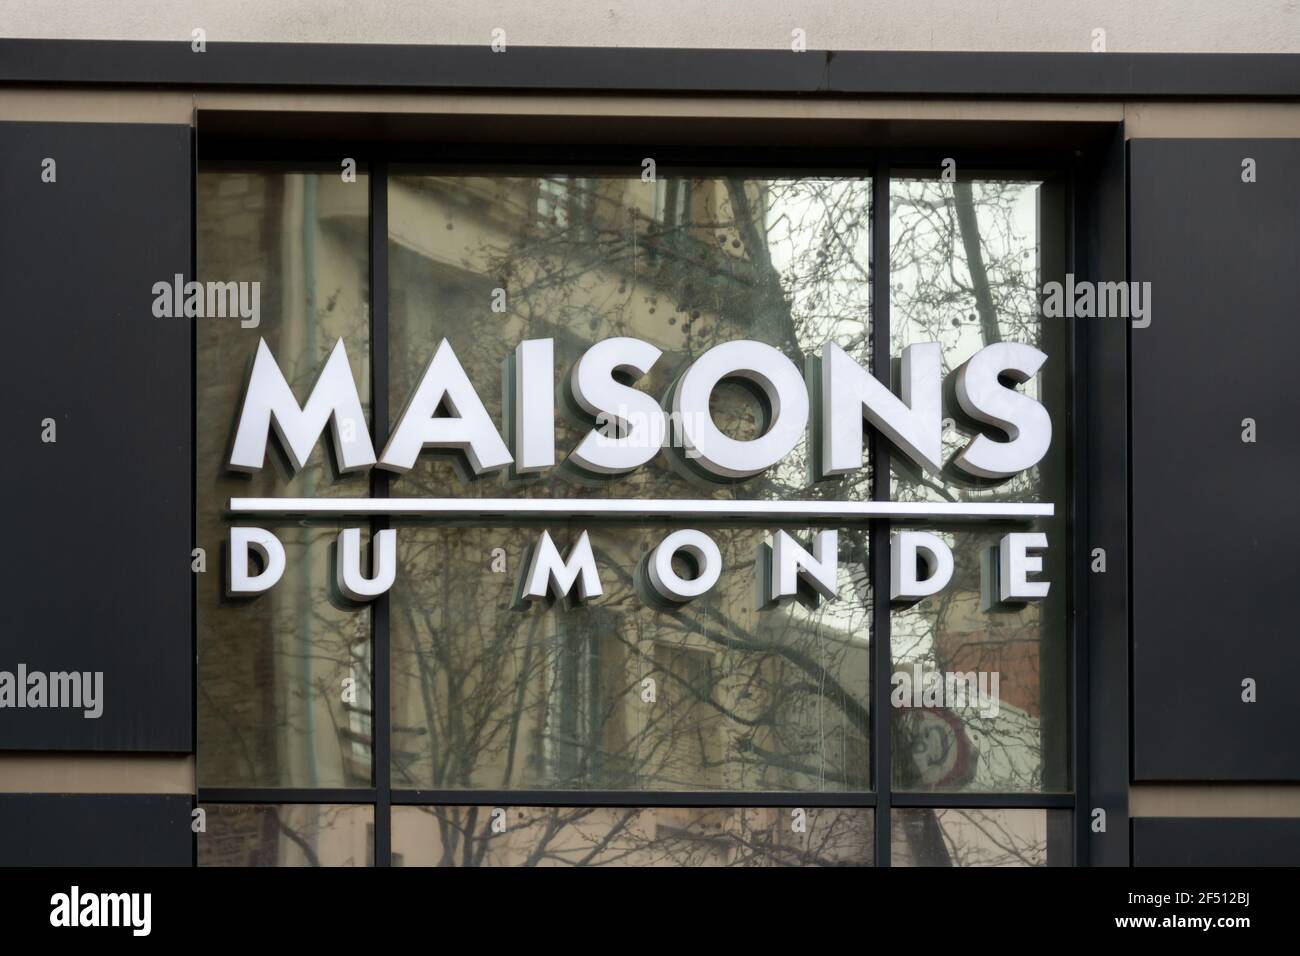 Zeichen eines Maisons du monde-Geschäfts, einer französischen Gruppe, die sich auf Möbel und Dekoration spezialisiert hat Stockfoto